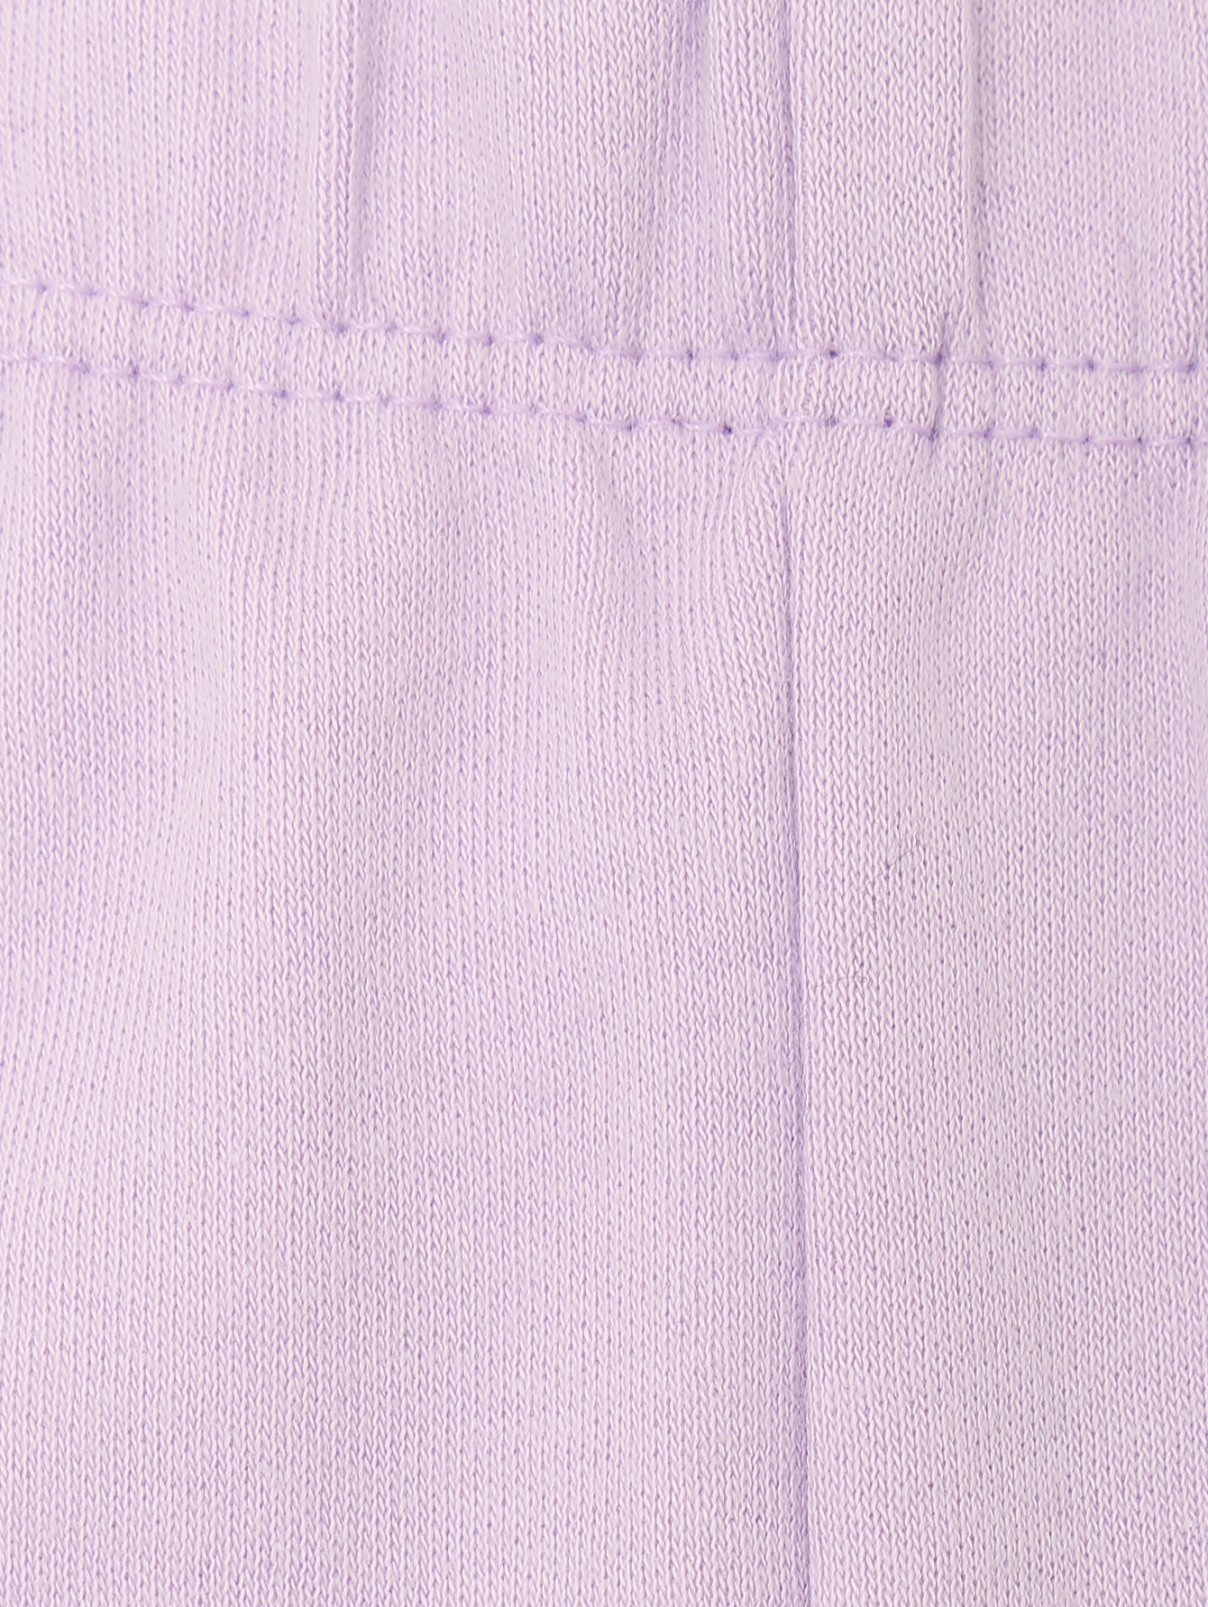 Пижама с принтом из хлопка Chicco  –  Деталь1  – Цвет:  Белый